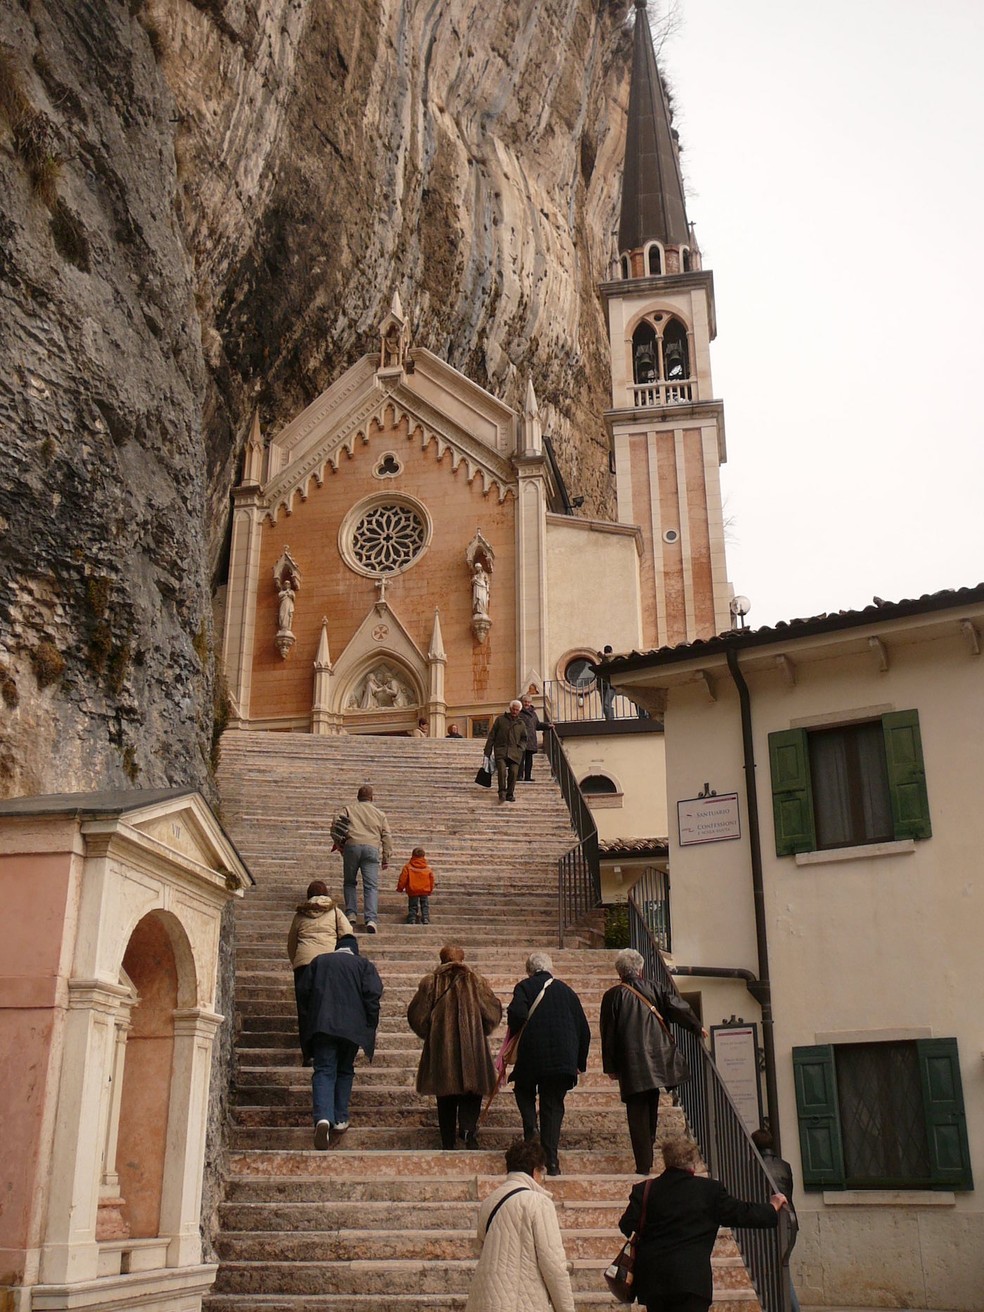 Visitantes encaram os mais de 1.500 degraus para chegar à igreja na Itália — Foto: Wikimedia / Llorenzi / Creative Commons